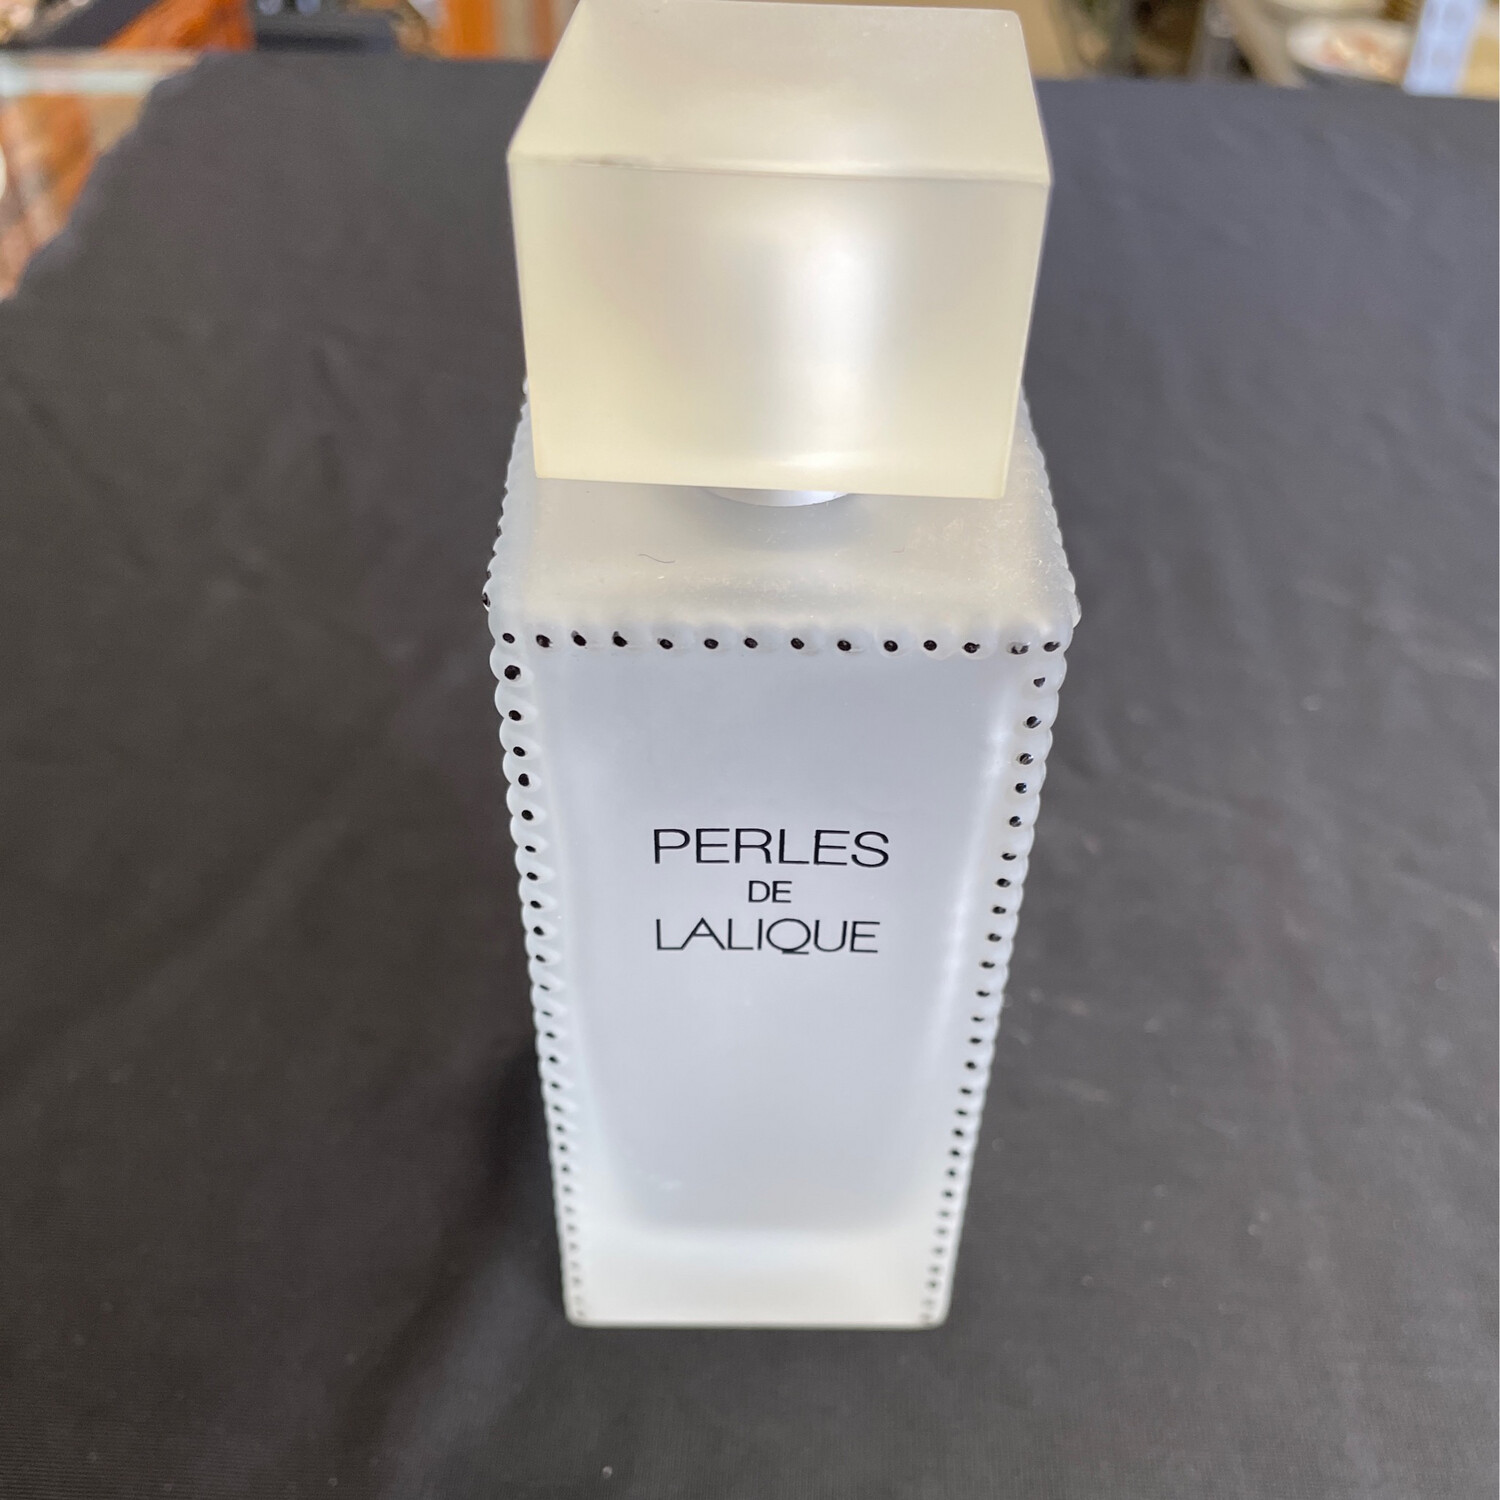 Perles de Lalique Perfume Bottle